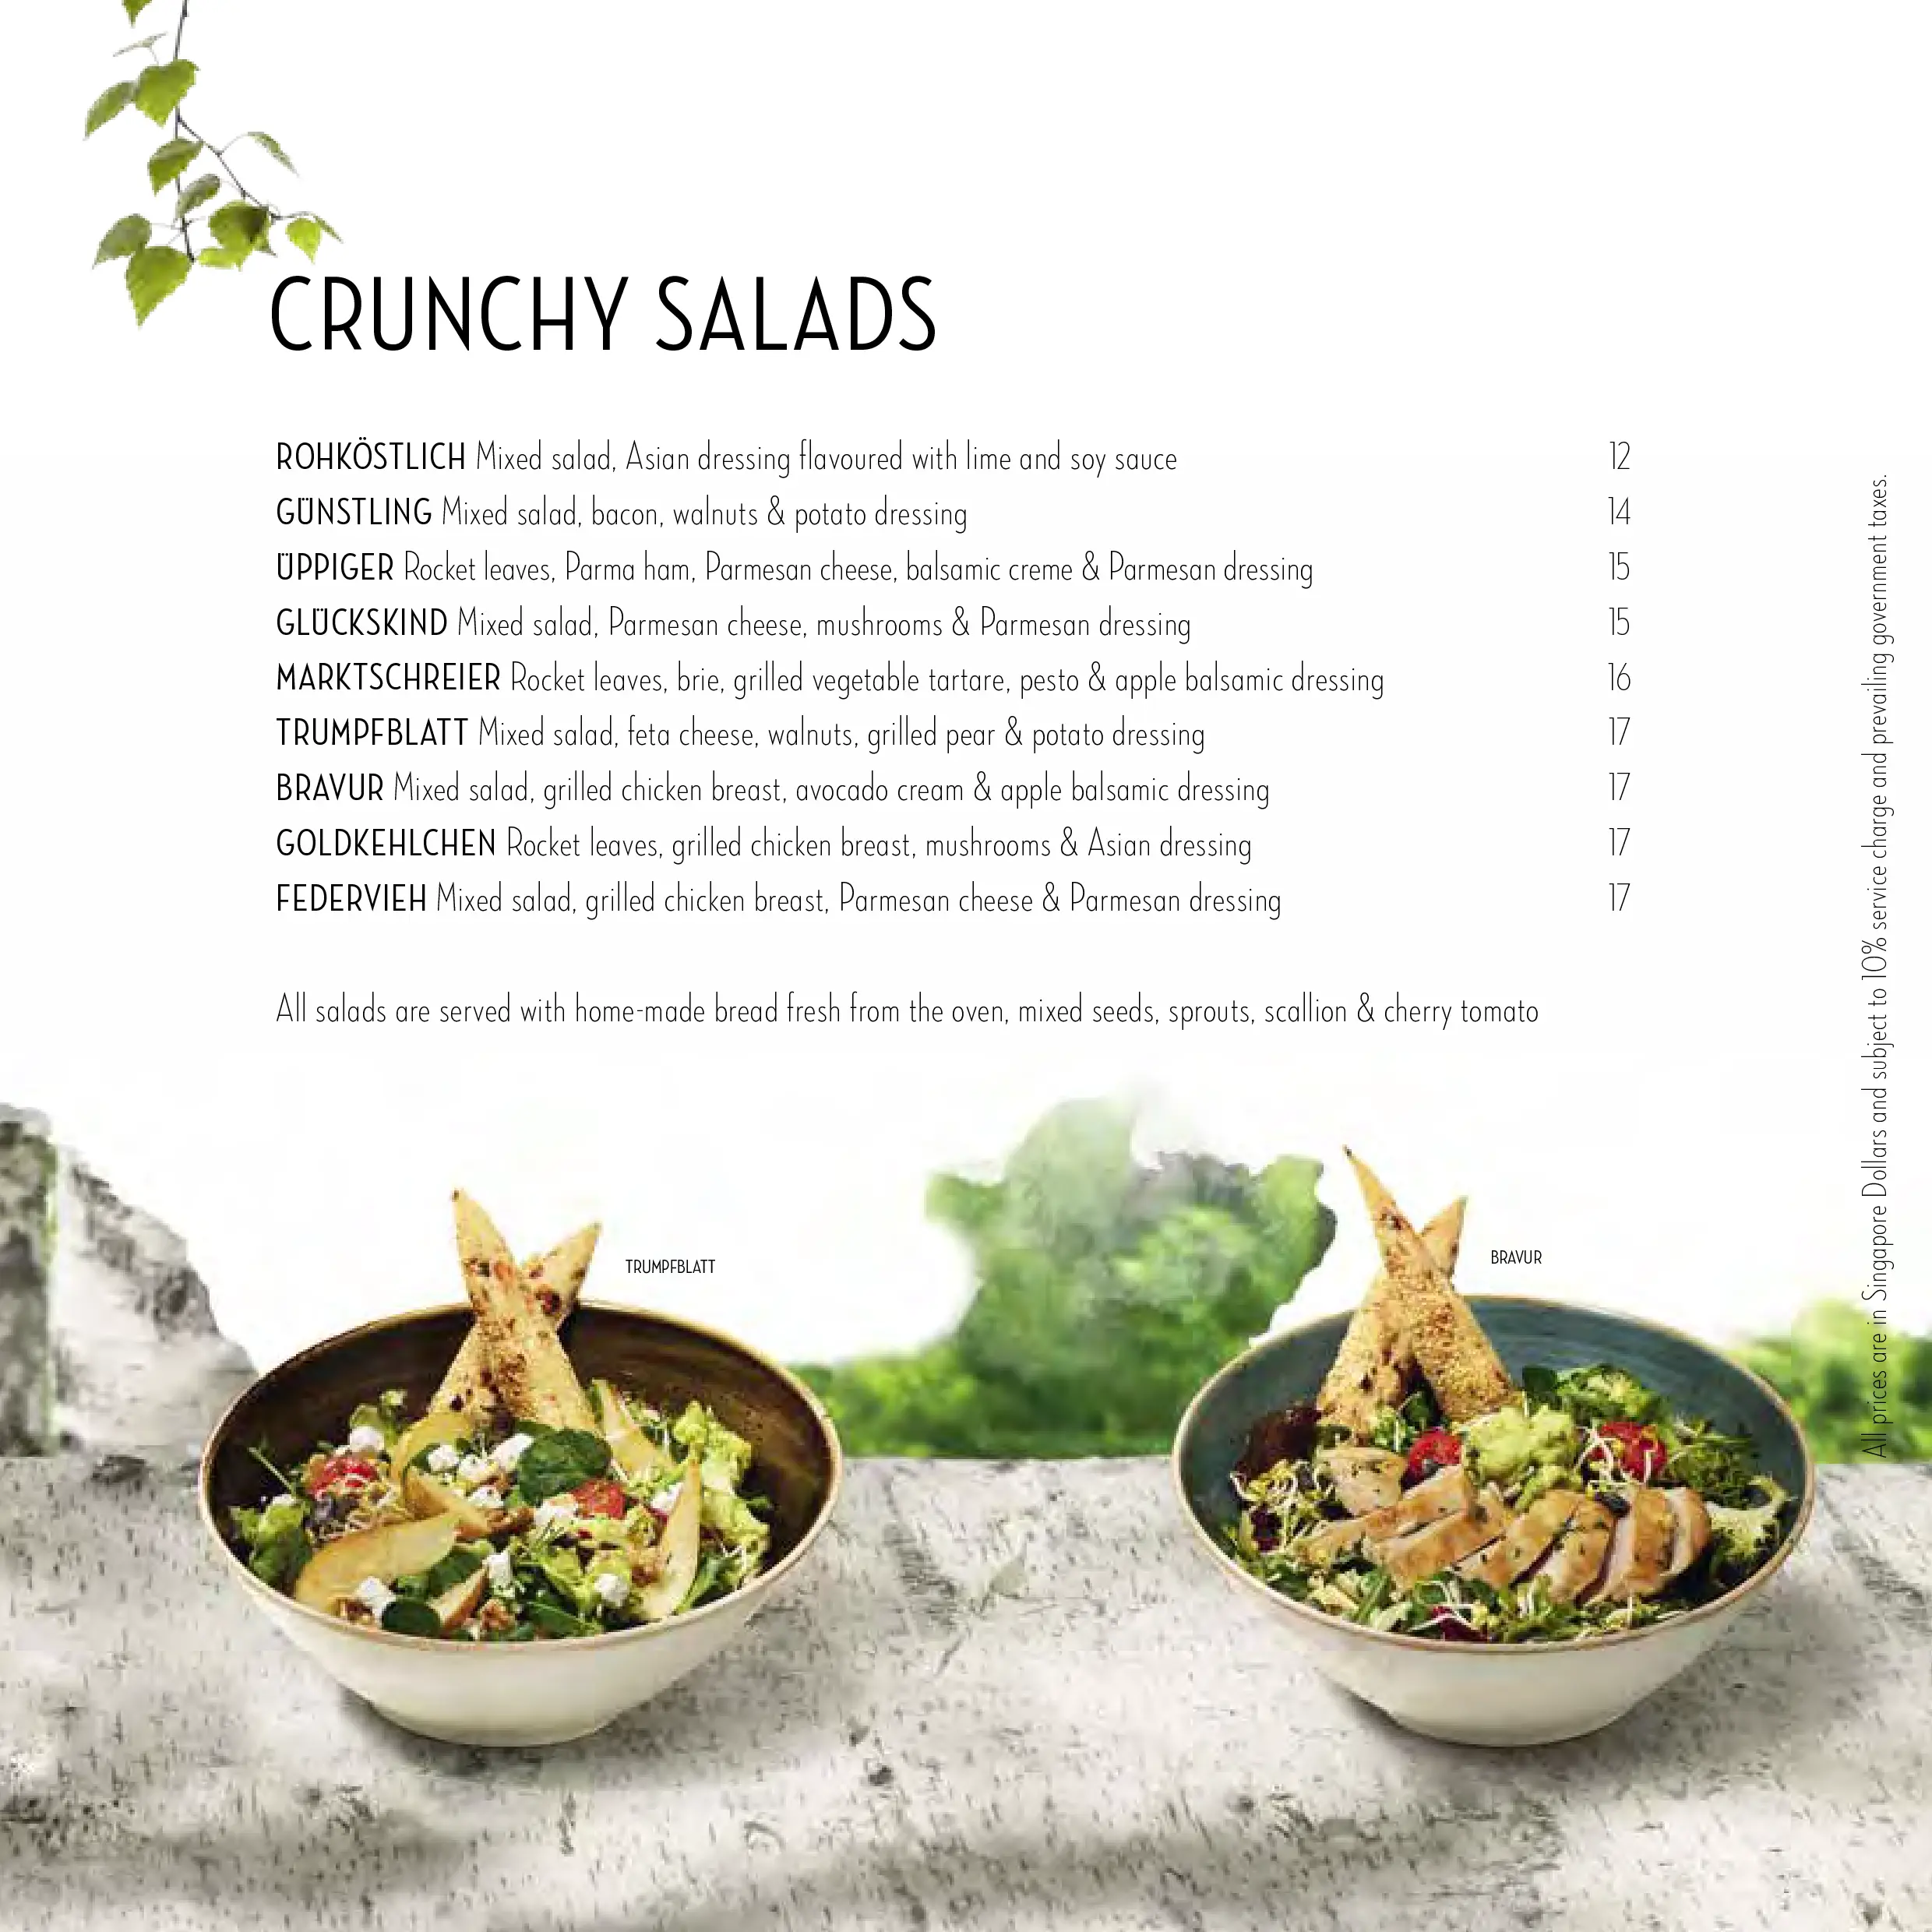 Hans im Glück Salads